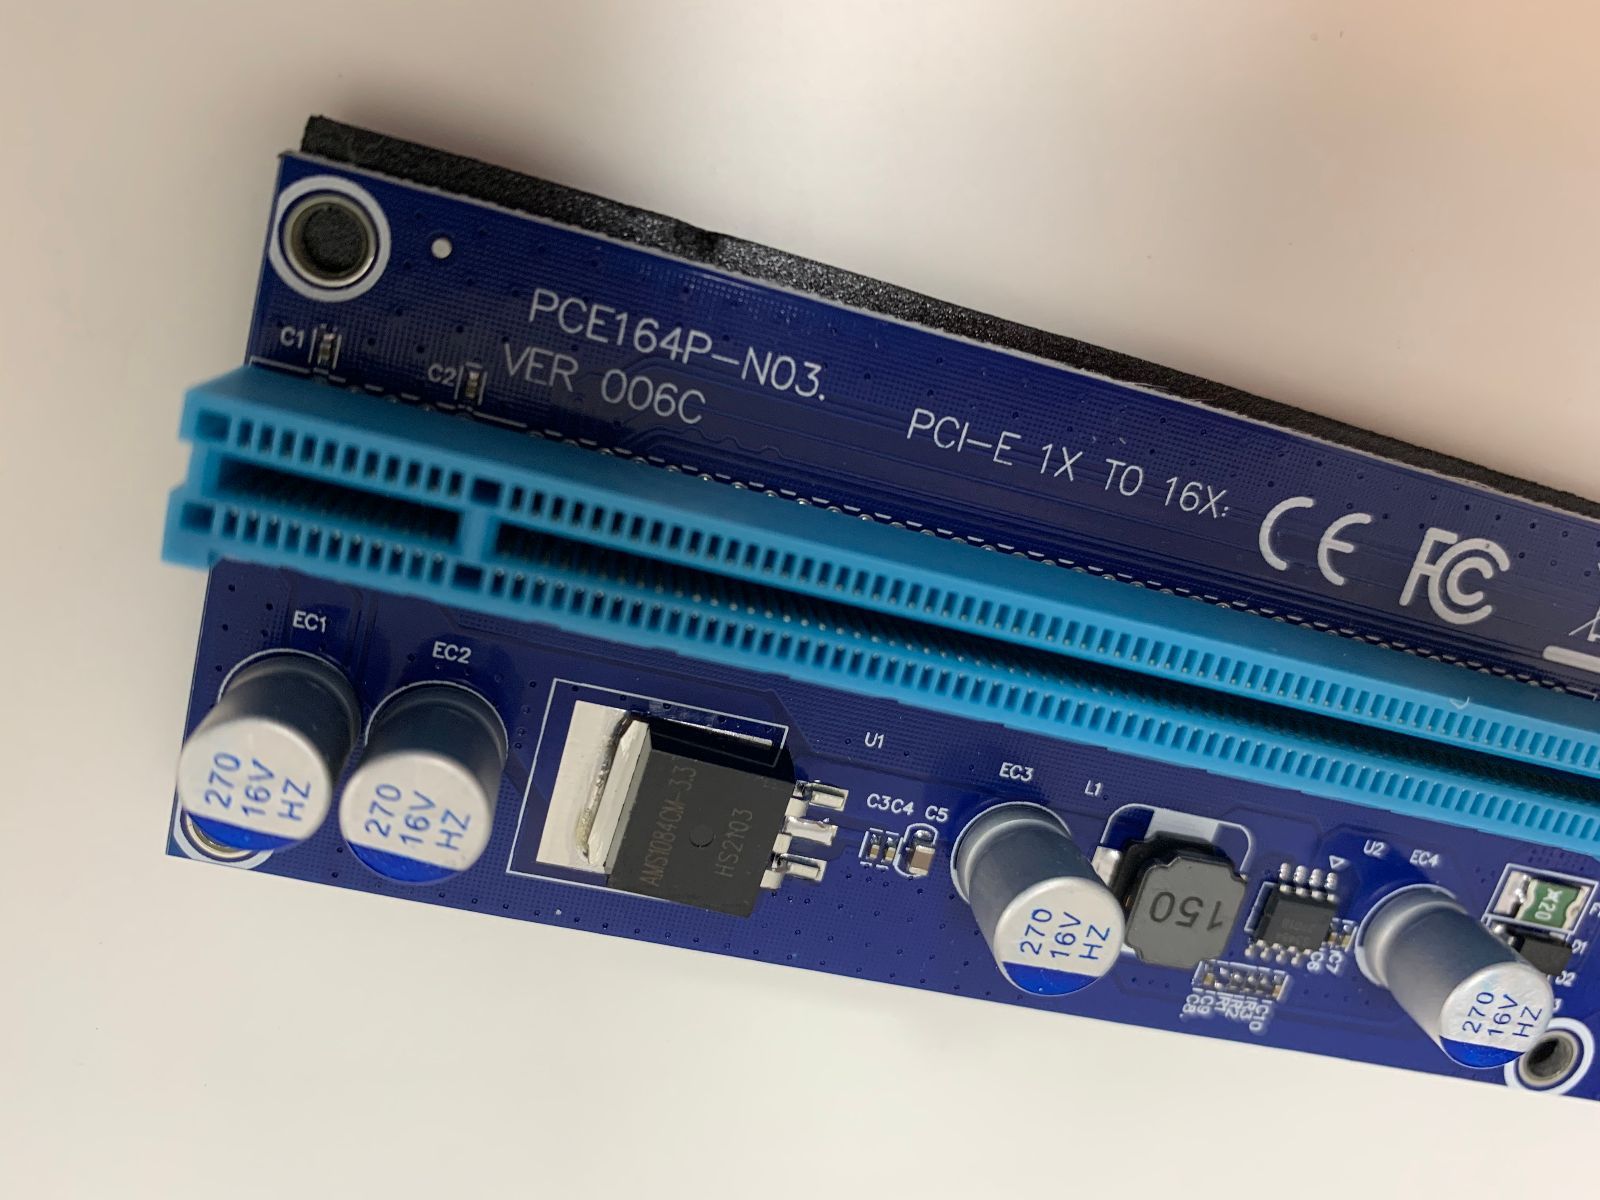 RTX306010点PCI-E ライザーカード (PCIe x1 to x16) マイニング用